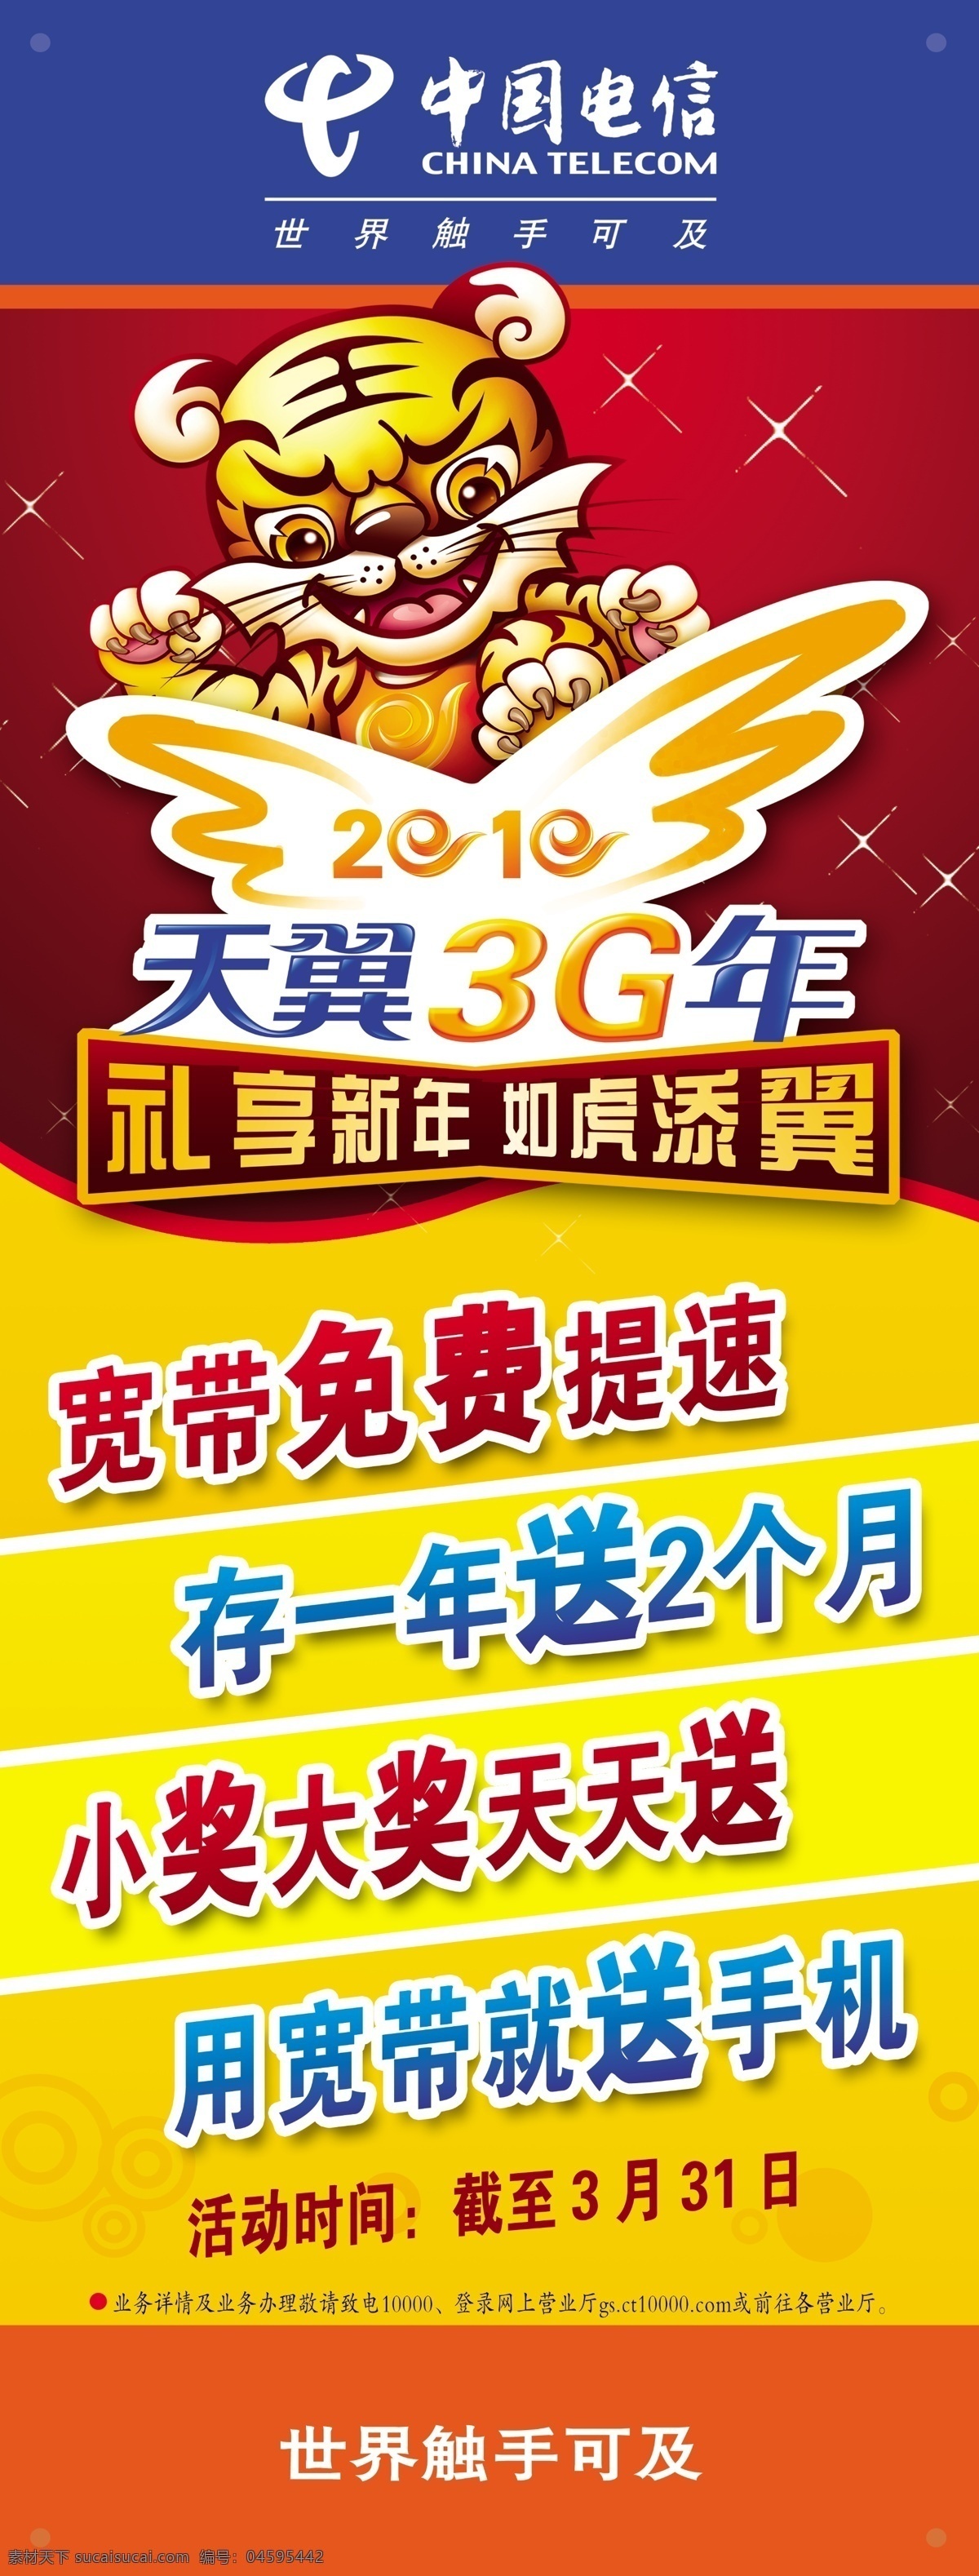 中国 电信业务 综合篇 x 展架 x展架 广告设计素材 天翼3g 中国电信 宽带业务